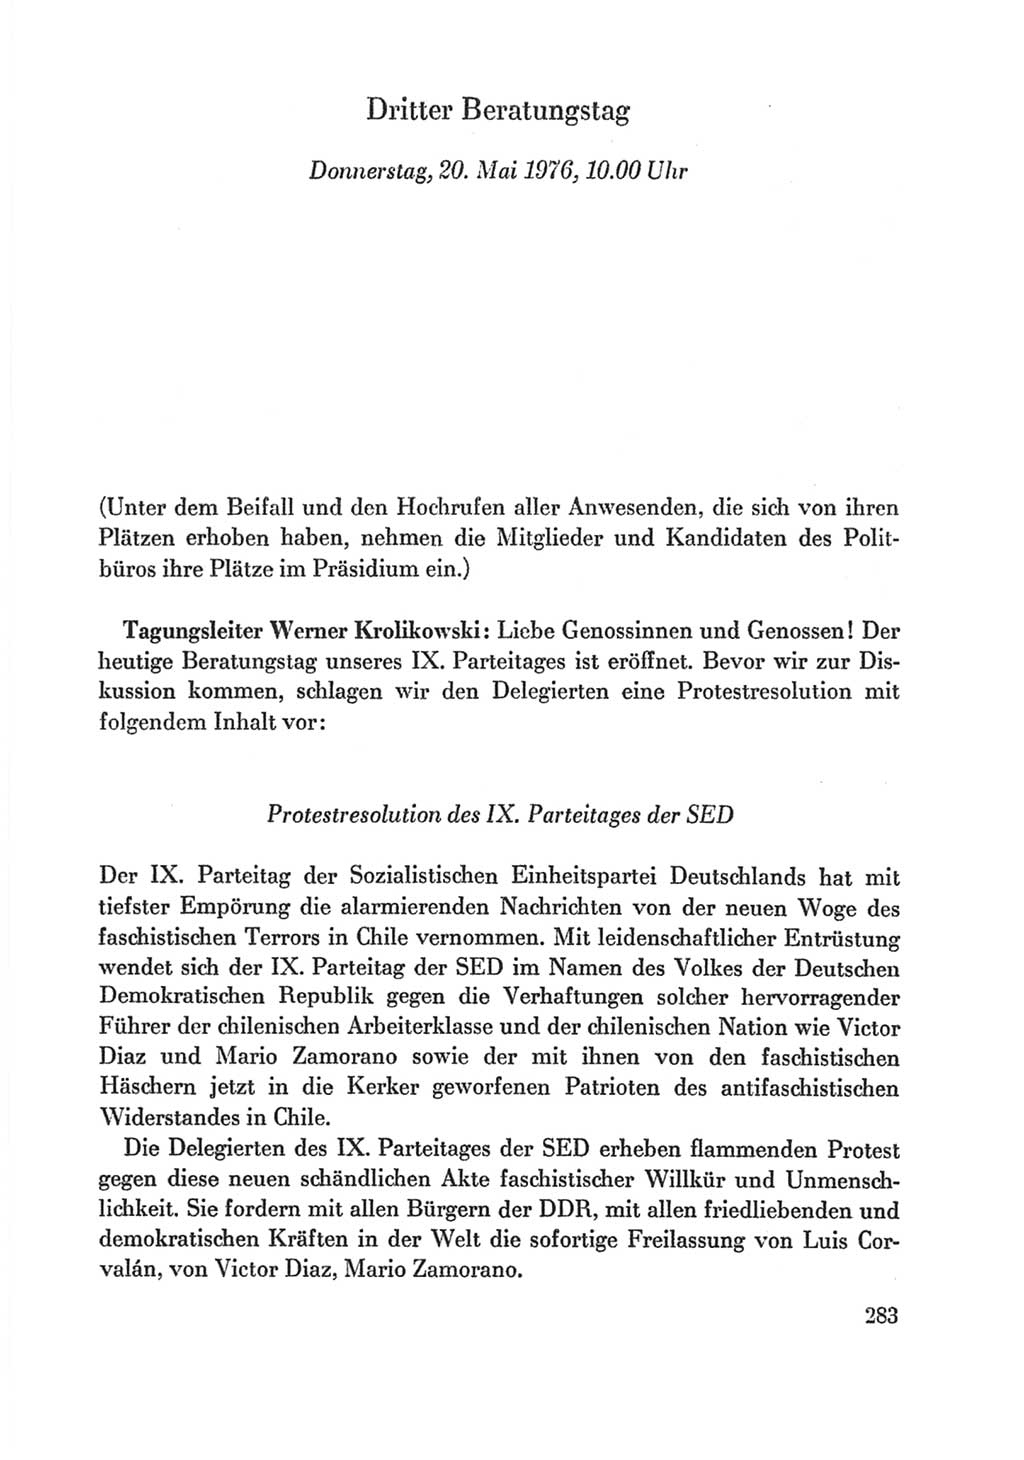 Protokoll der Verhandlungen des Ⅸ. Parteitages der Sozialistischen Einheitspartei Deutschlands (SED) [Deutsche Demokratische Republik (DDR)] 1976, Band 1, Seite 283 (Prot. Verh. Ⅸ. PT SED DDR 1976, Bd. 1, S. 283)